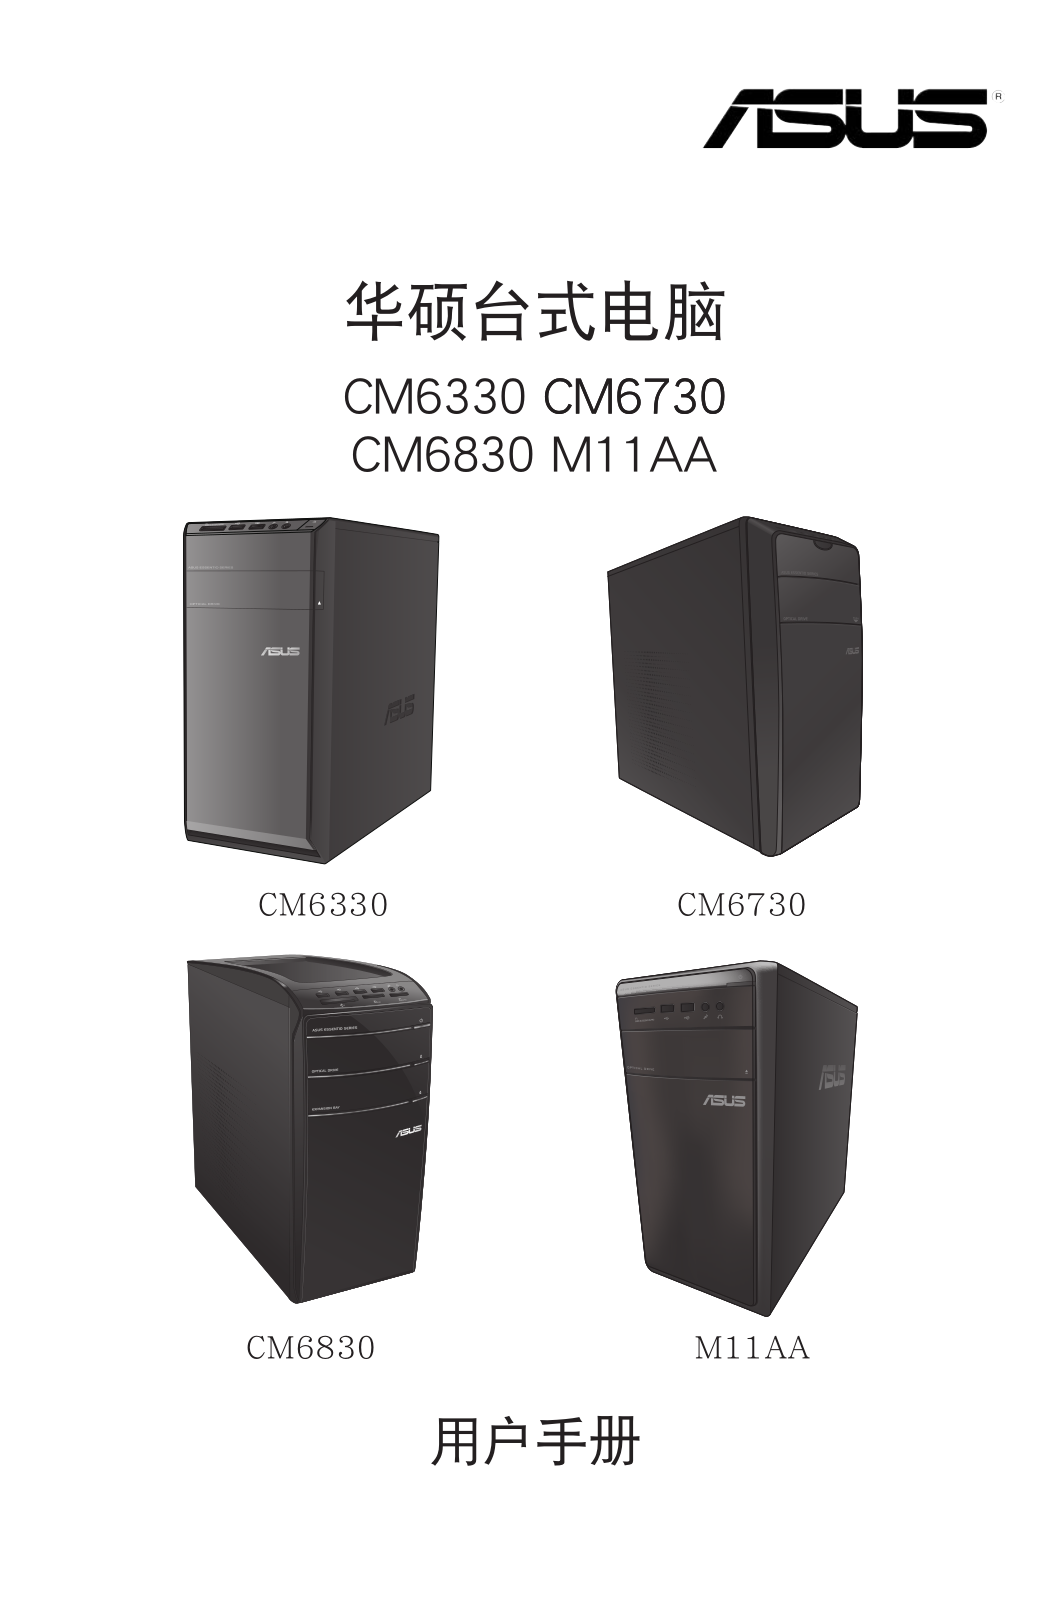 ASUS CM6730, M11AA, C7956 User Manual